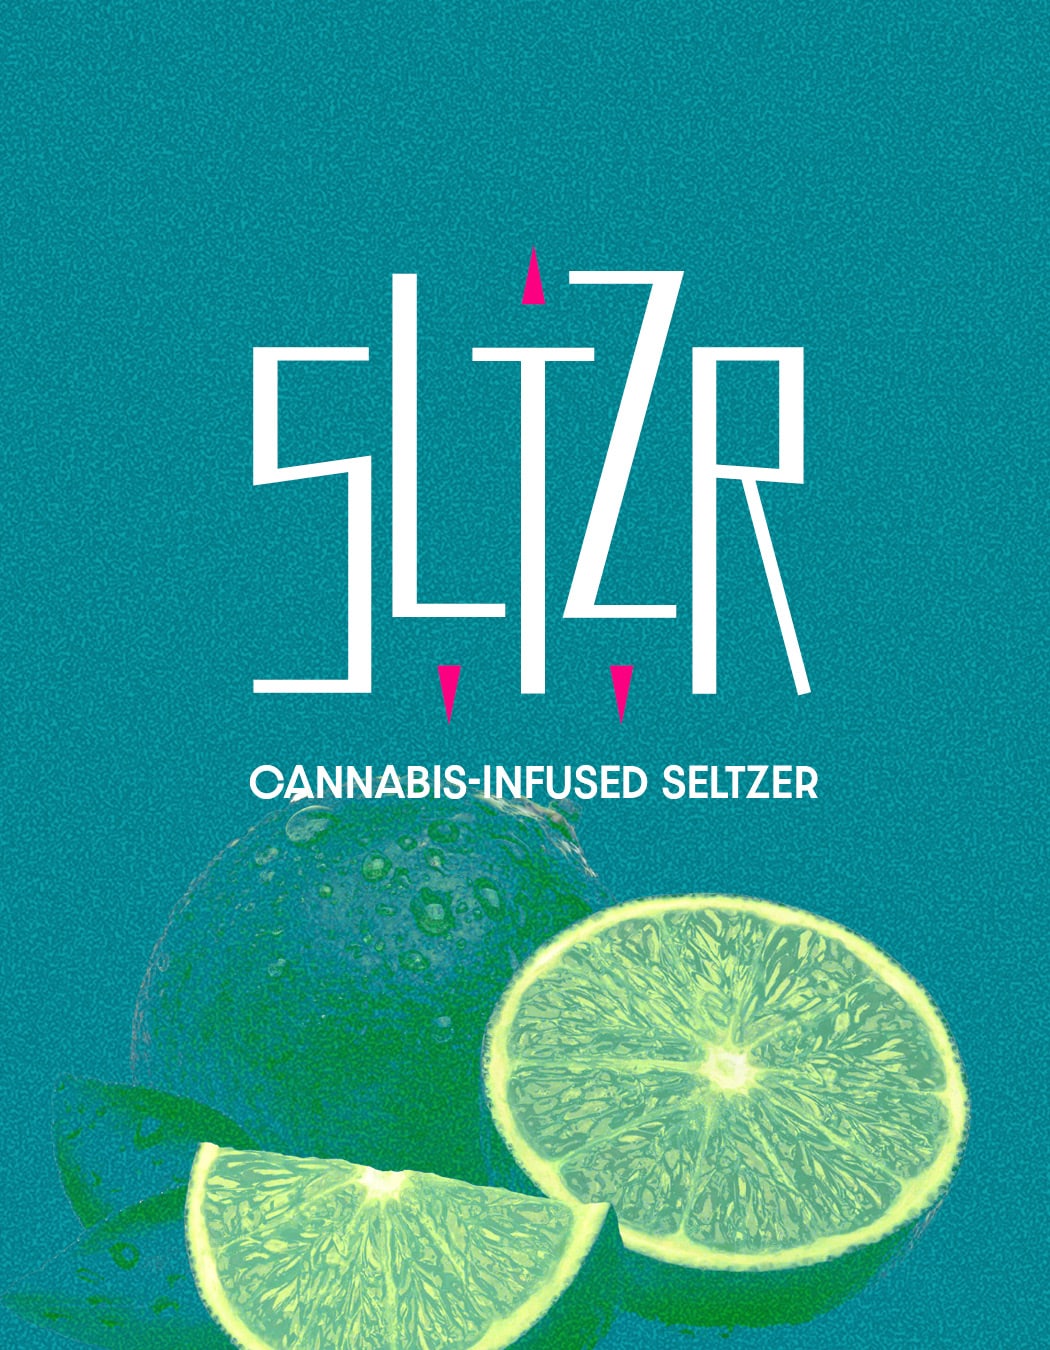 sltzr-ontario-toronto-graphic-brand-design-cannabis-seltzer-beverage-ft